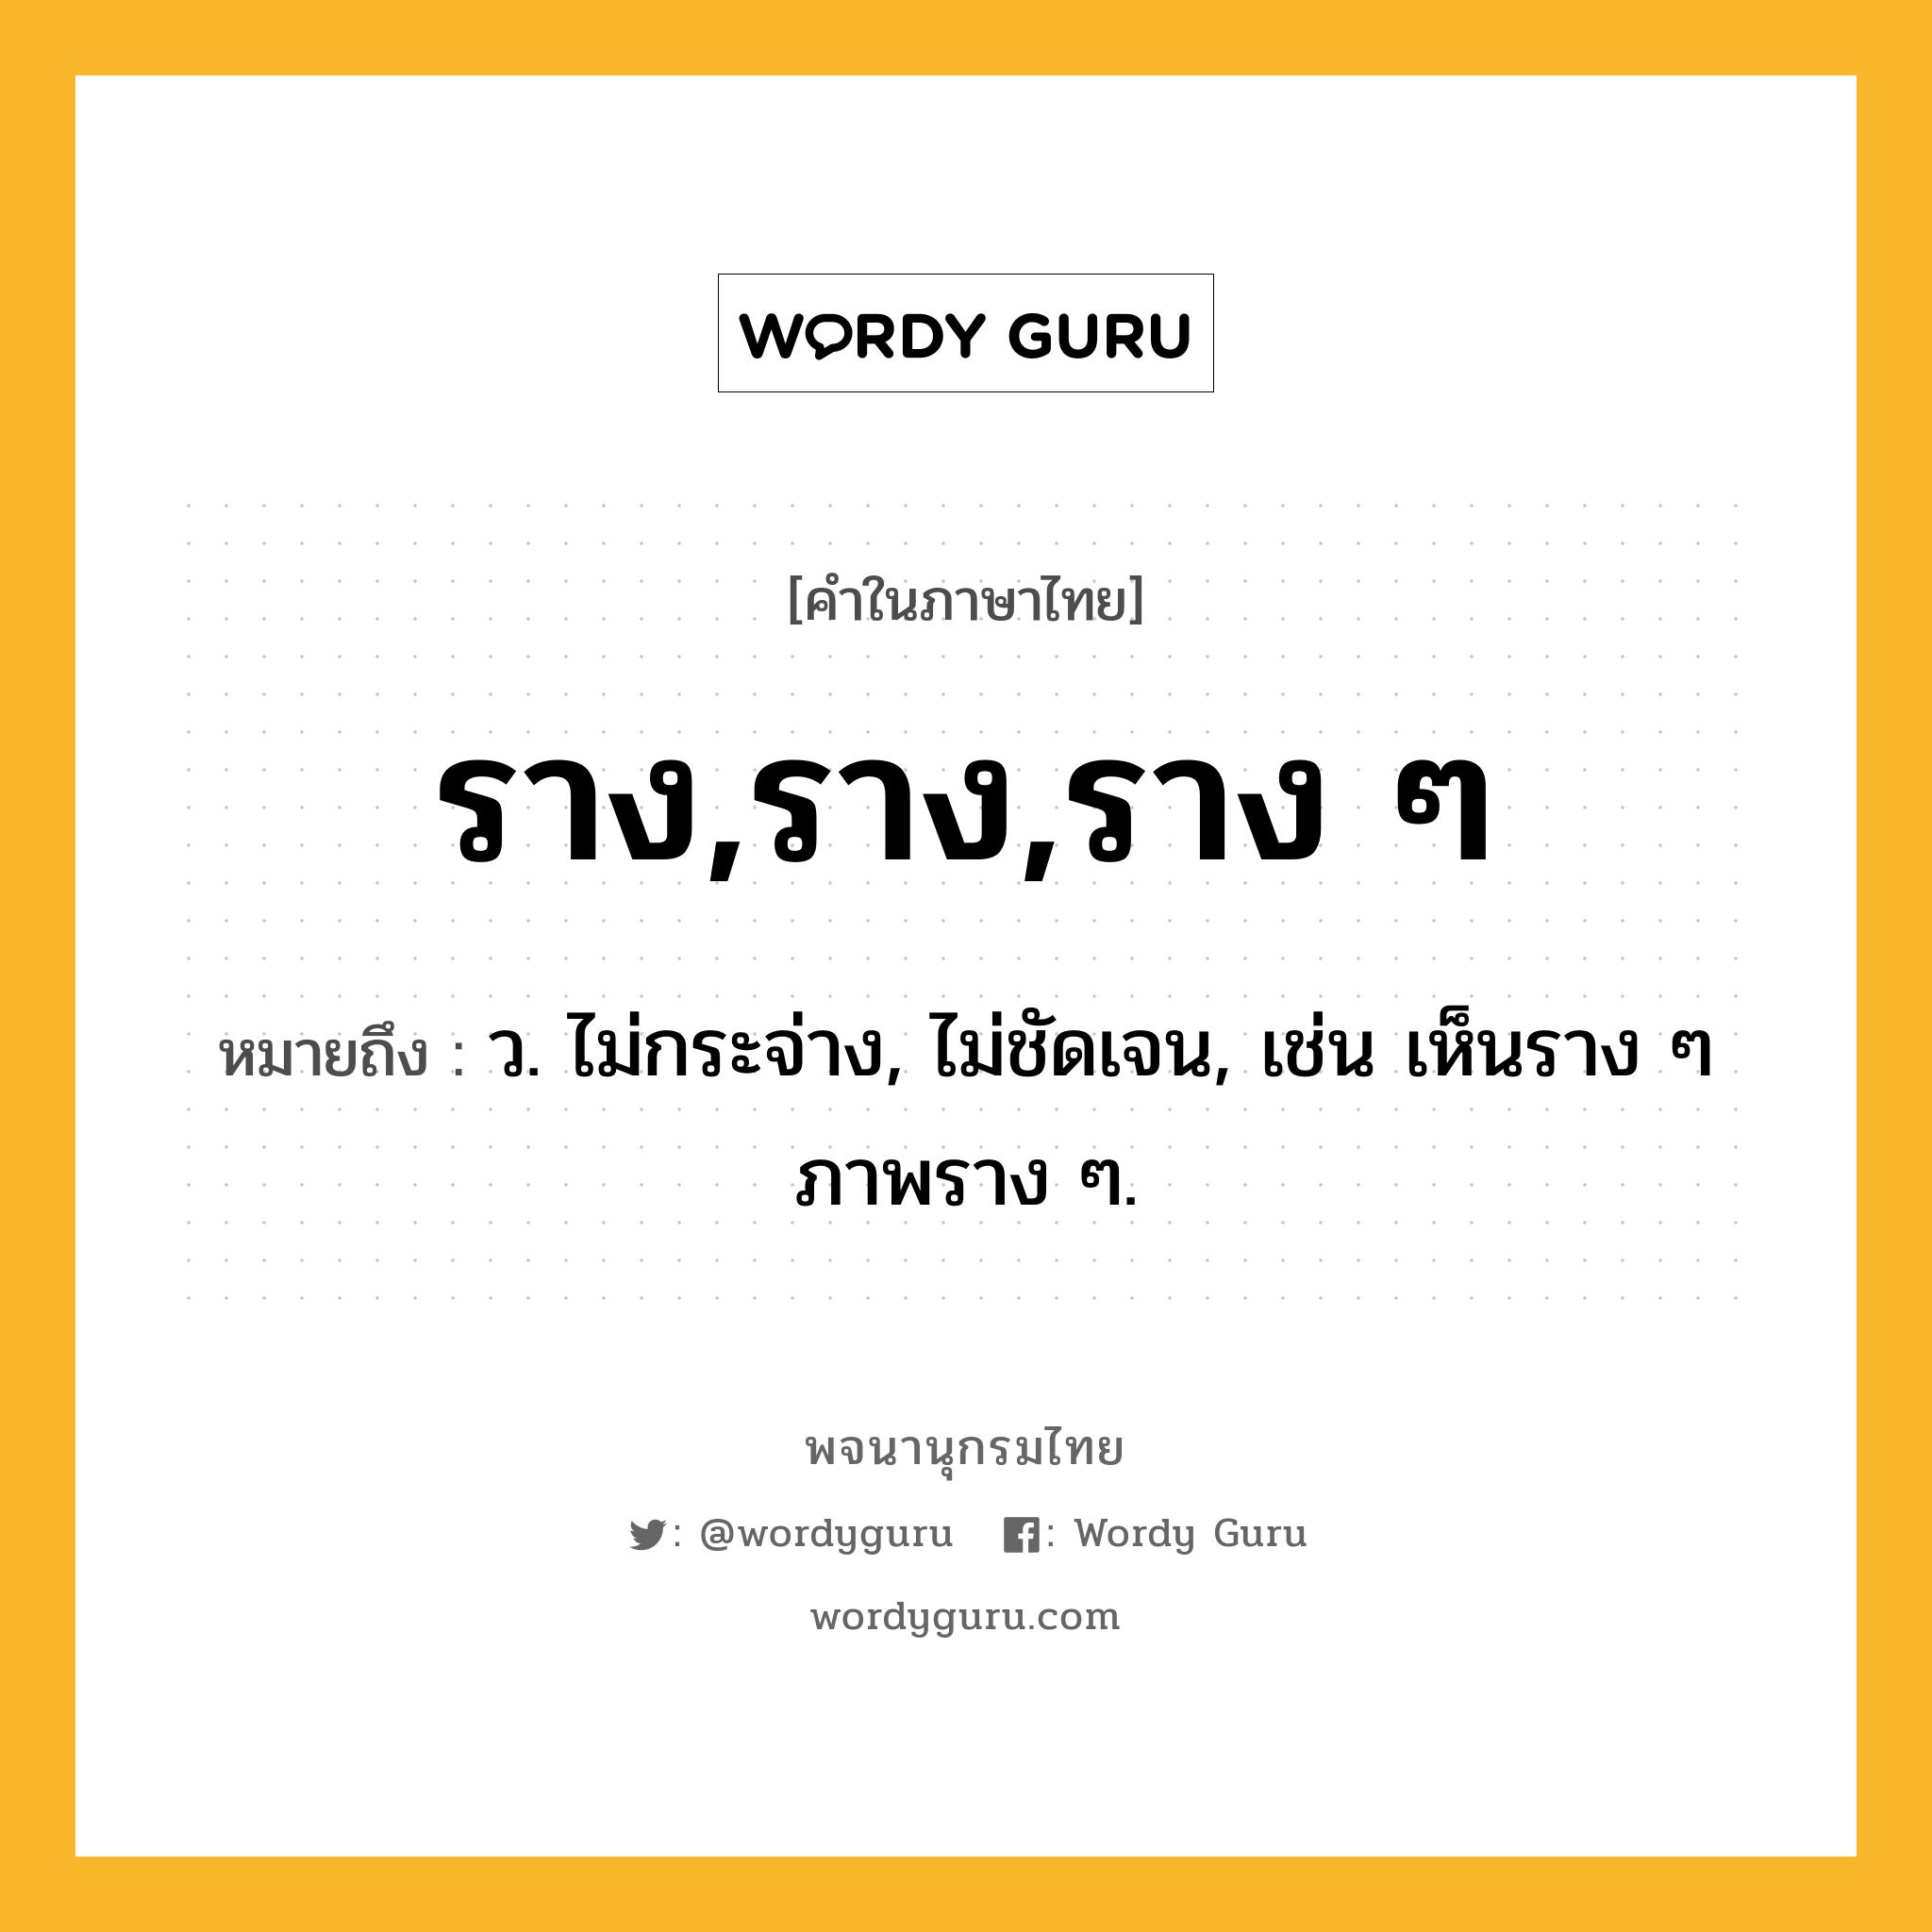 ราง,ราง,ราง ๆ ความหมาย หมายถึงอะไร?, คำในภาษาไทย ราง,ราง,ราง ๆ หมายถึง ว. ไม่กระจ่าง, ไม่ชัดเจน, เช่น เห็นราง ๆ ภาพราง ๆ.